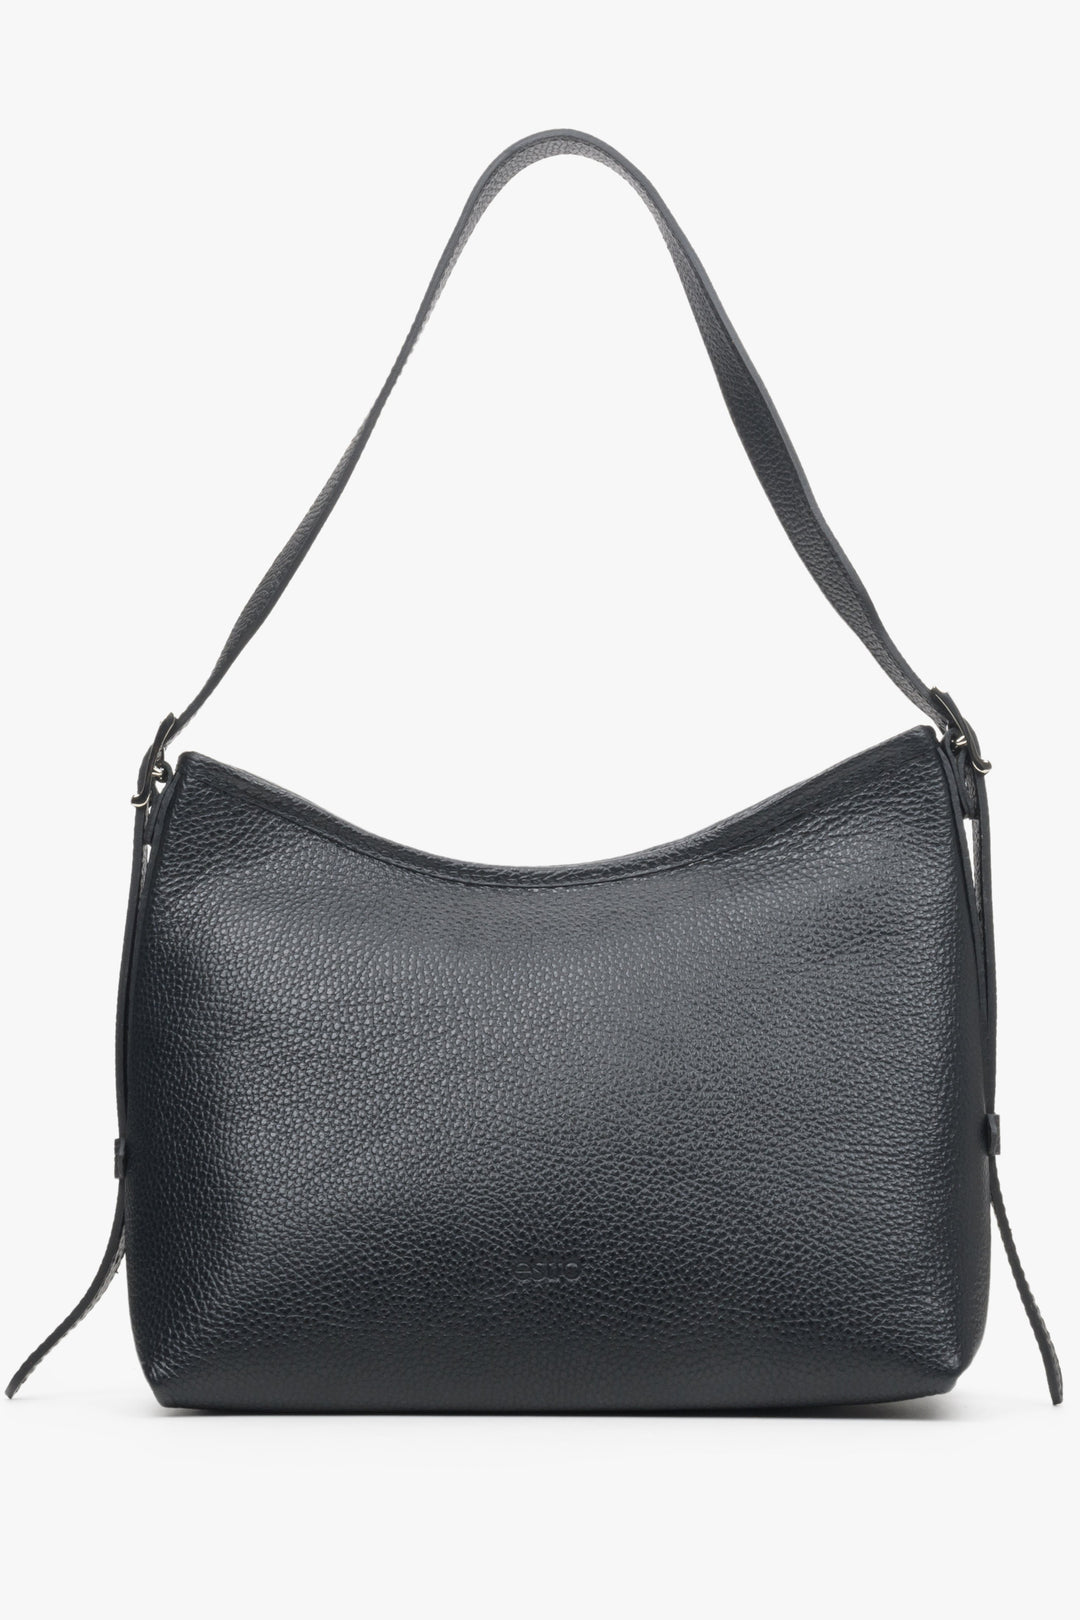 Women's Black Shoulder Bag made of Genuine Leather Estro ER00113700.